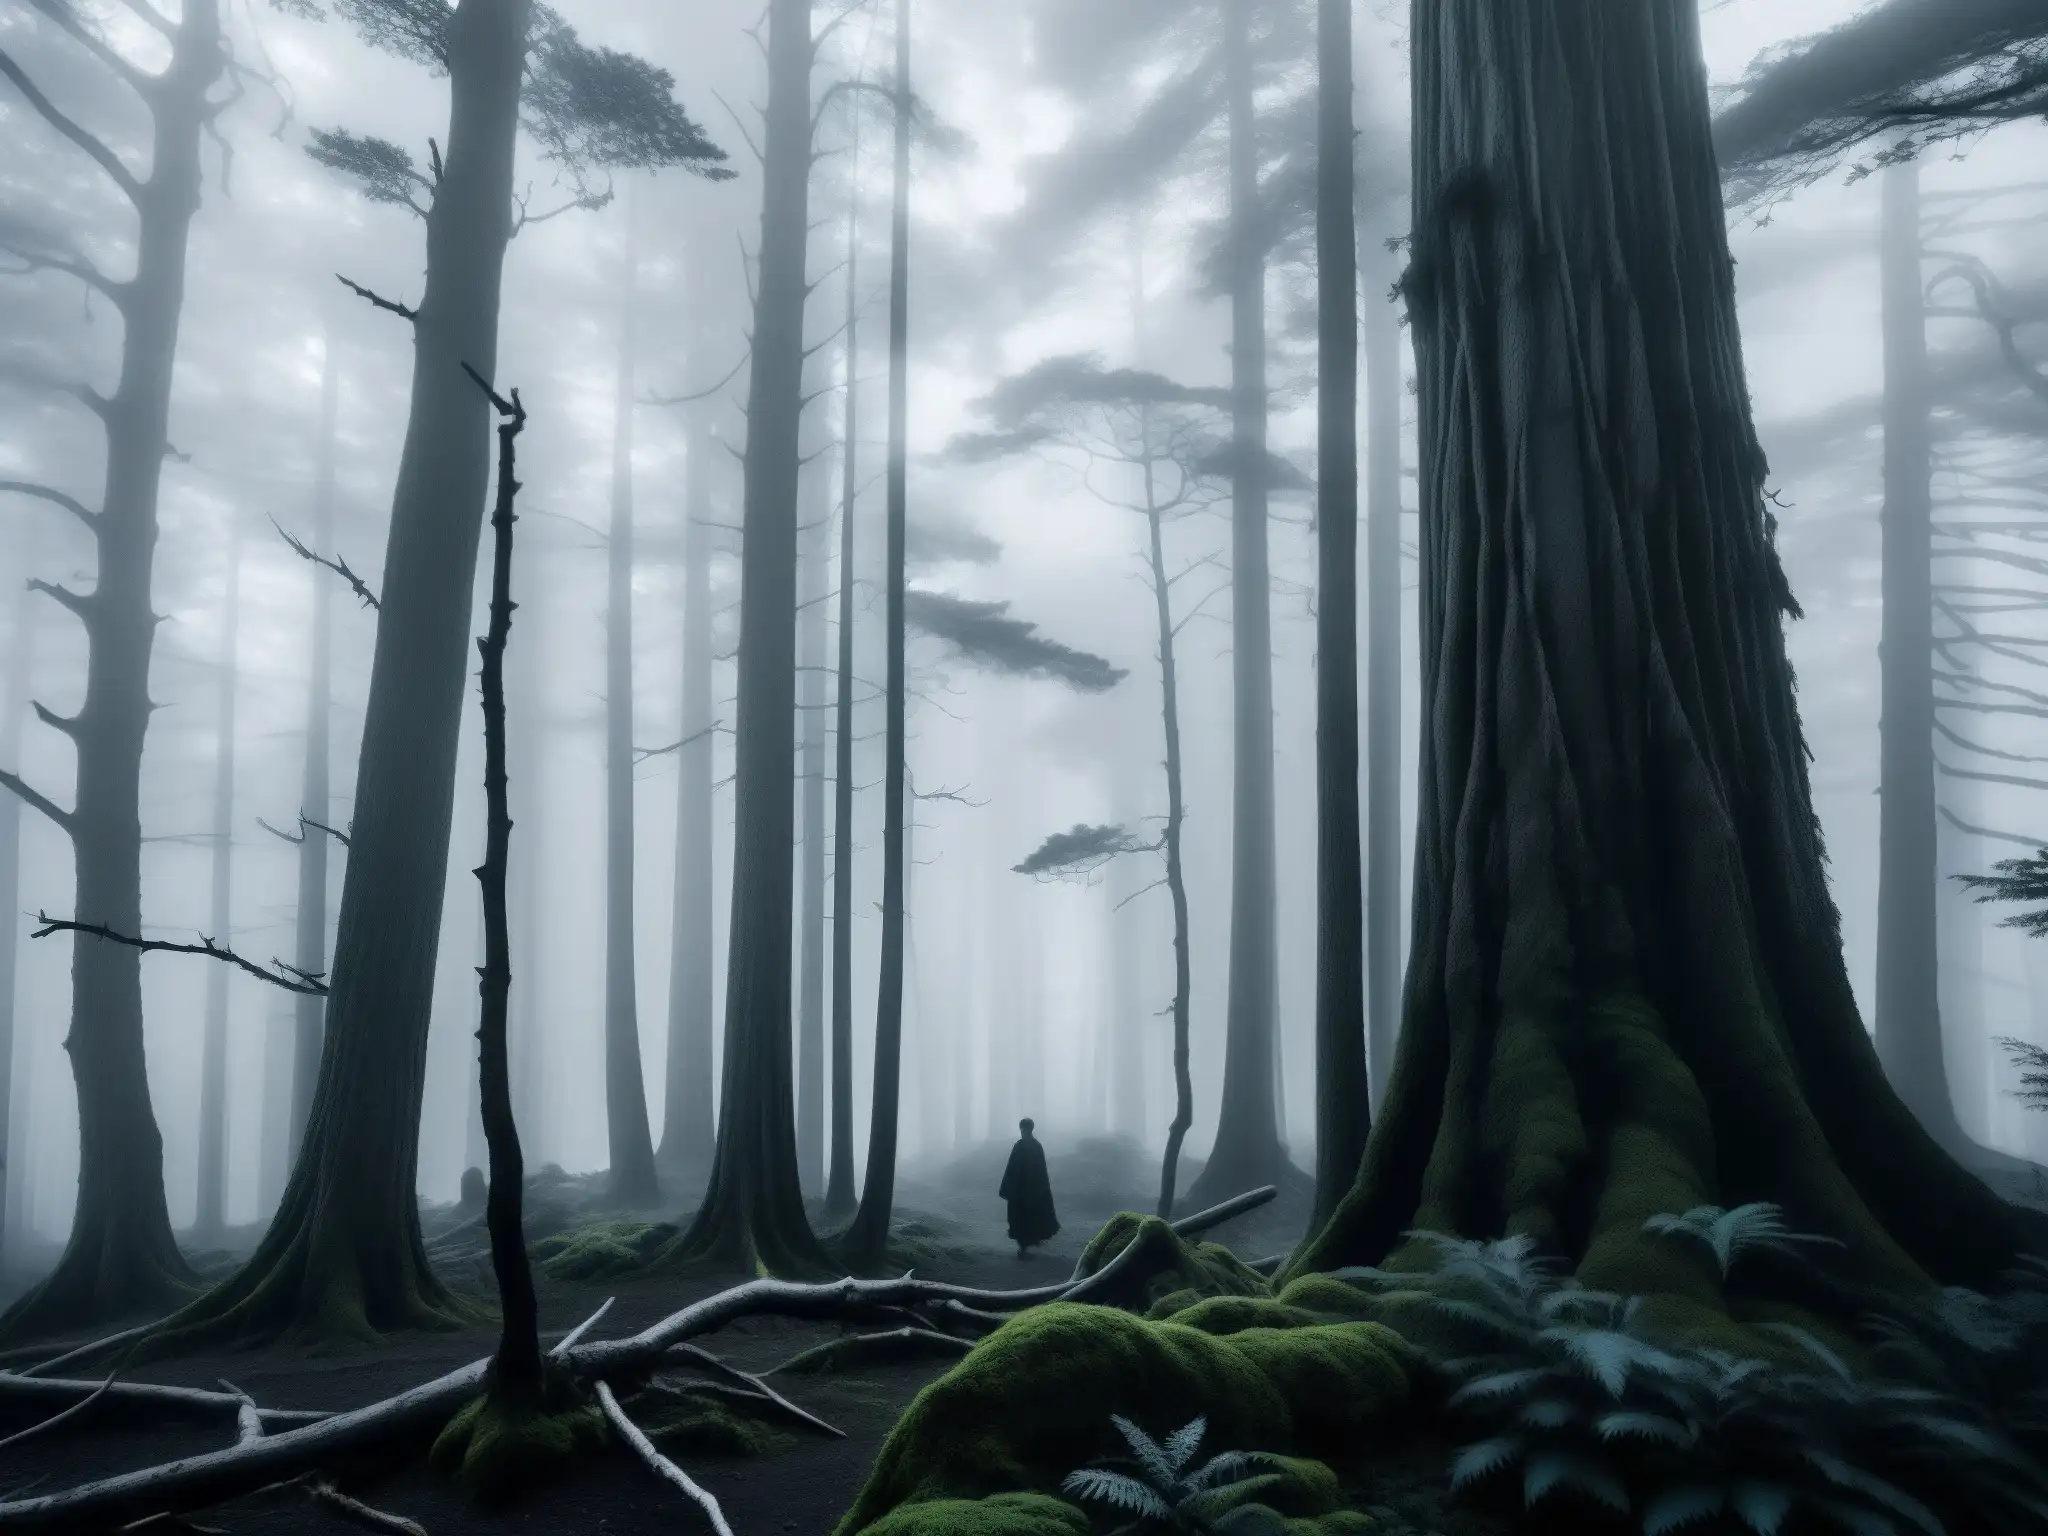 Un bosque japonés neblinoso y misterioso al atardecer evoca el origen y difusión de leyendas urbanas